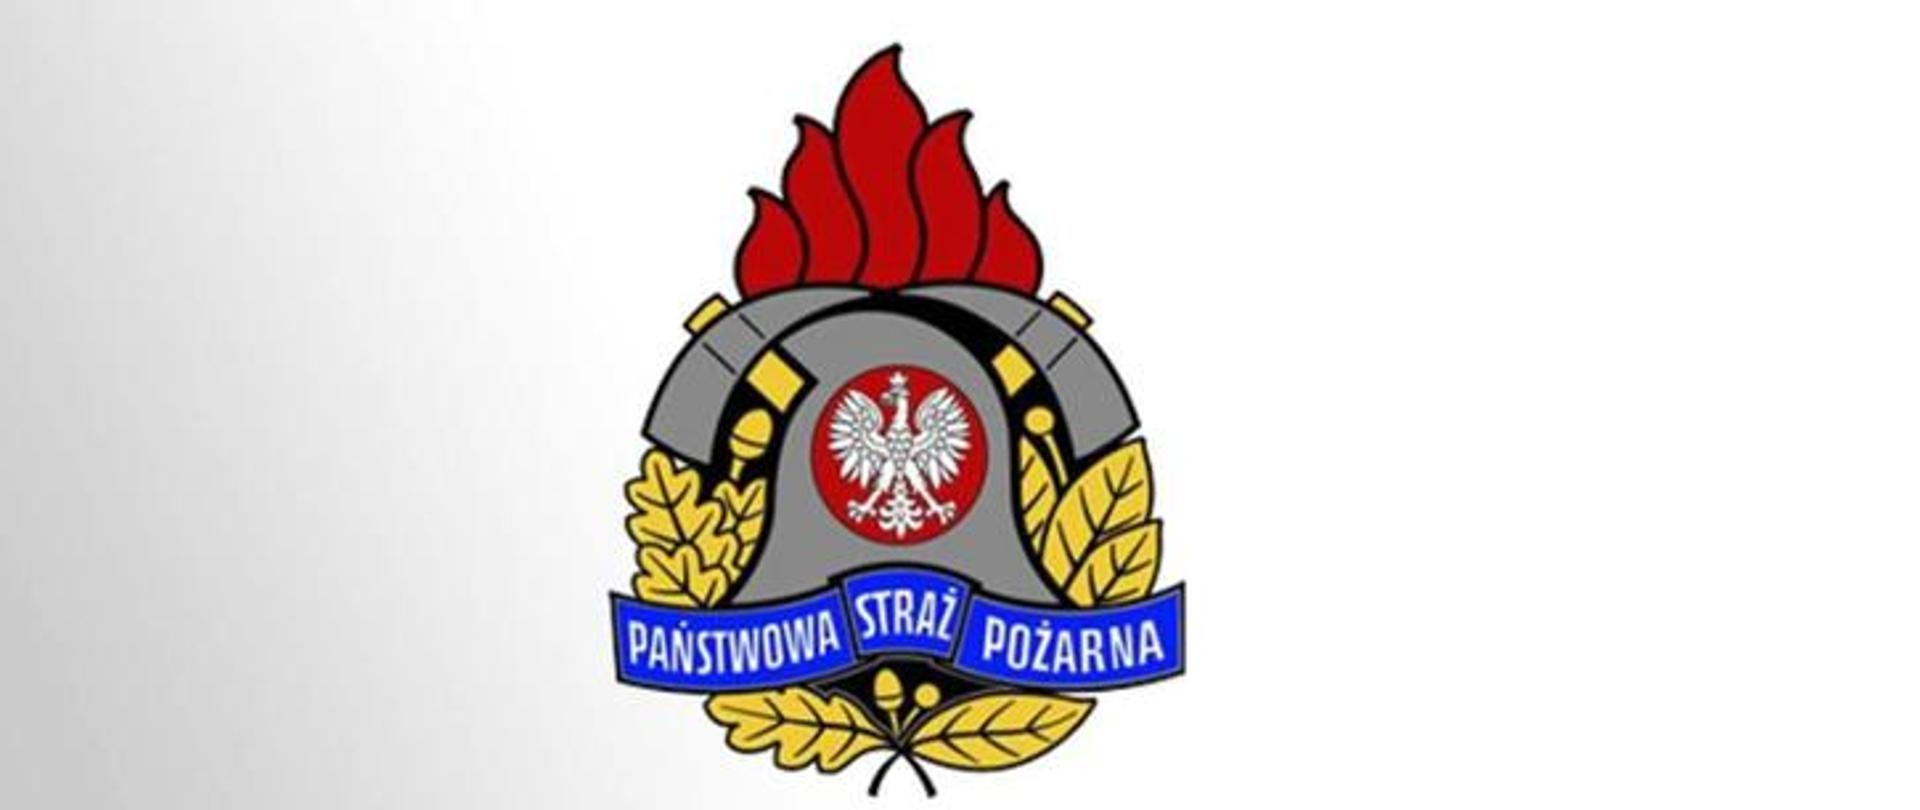 Zdjęcie przedstawia logo PSP, hełm strażacki z białym orłem na czerwonym tle usadowiony na żółtych liściach dębu, pod spodem na niebieskim tle napis Państwowa Straż Pożarna. Za hełmem dwa skrzyżowane toporki, nad którymi znajduje się czerwony płomień.